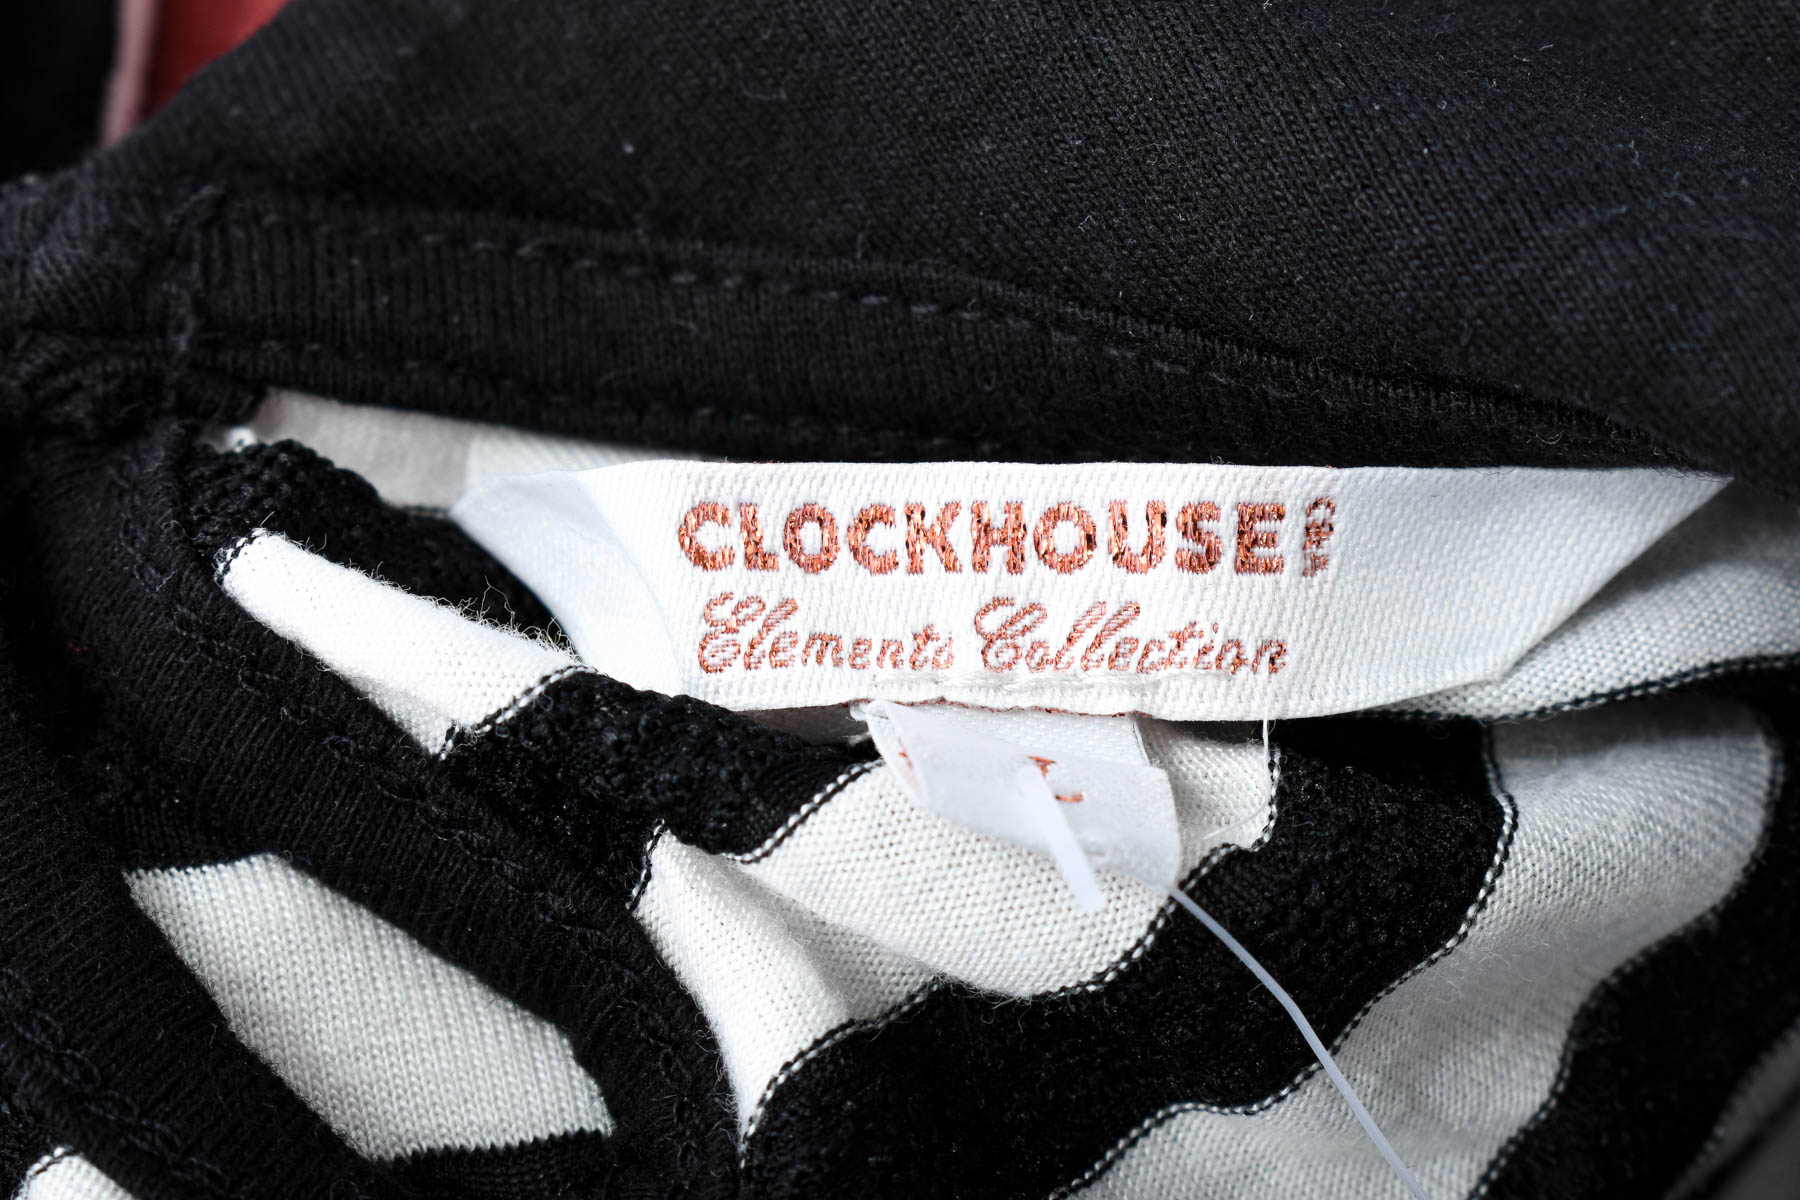 Women's blouse - Clockhouse - 2